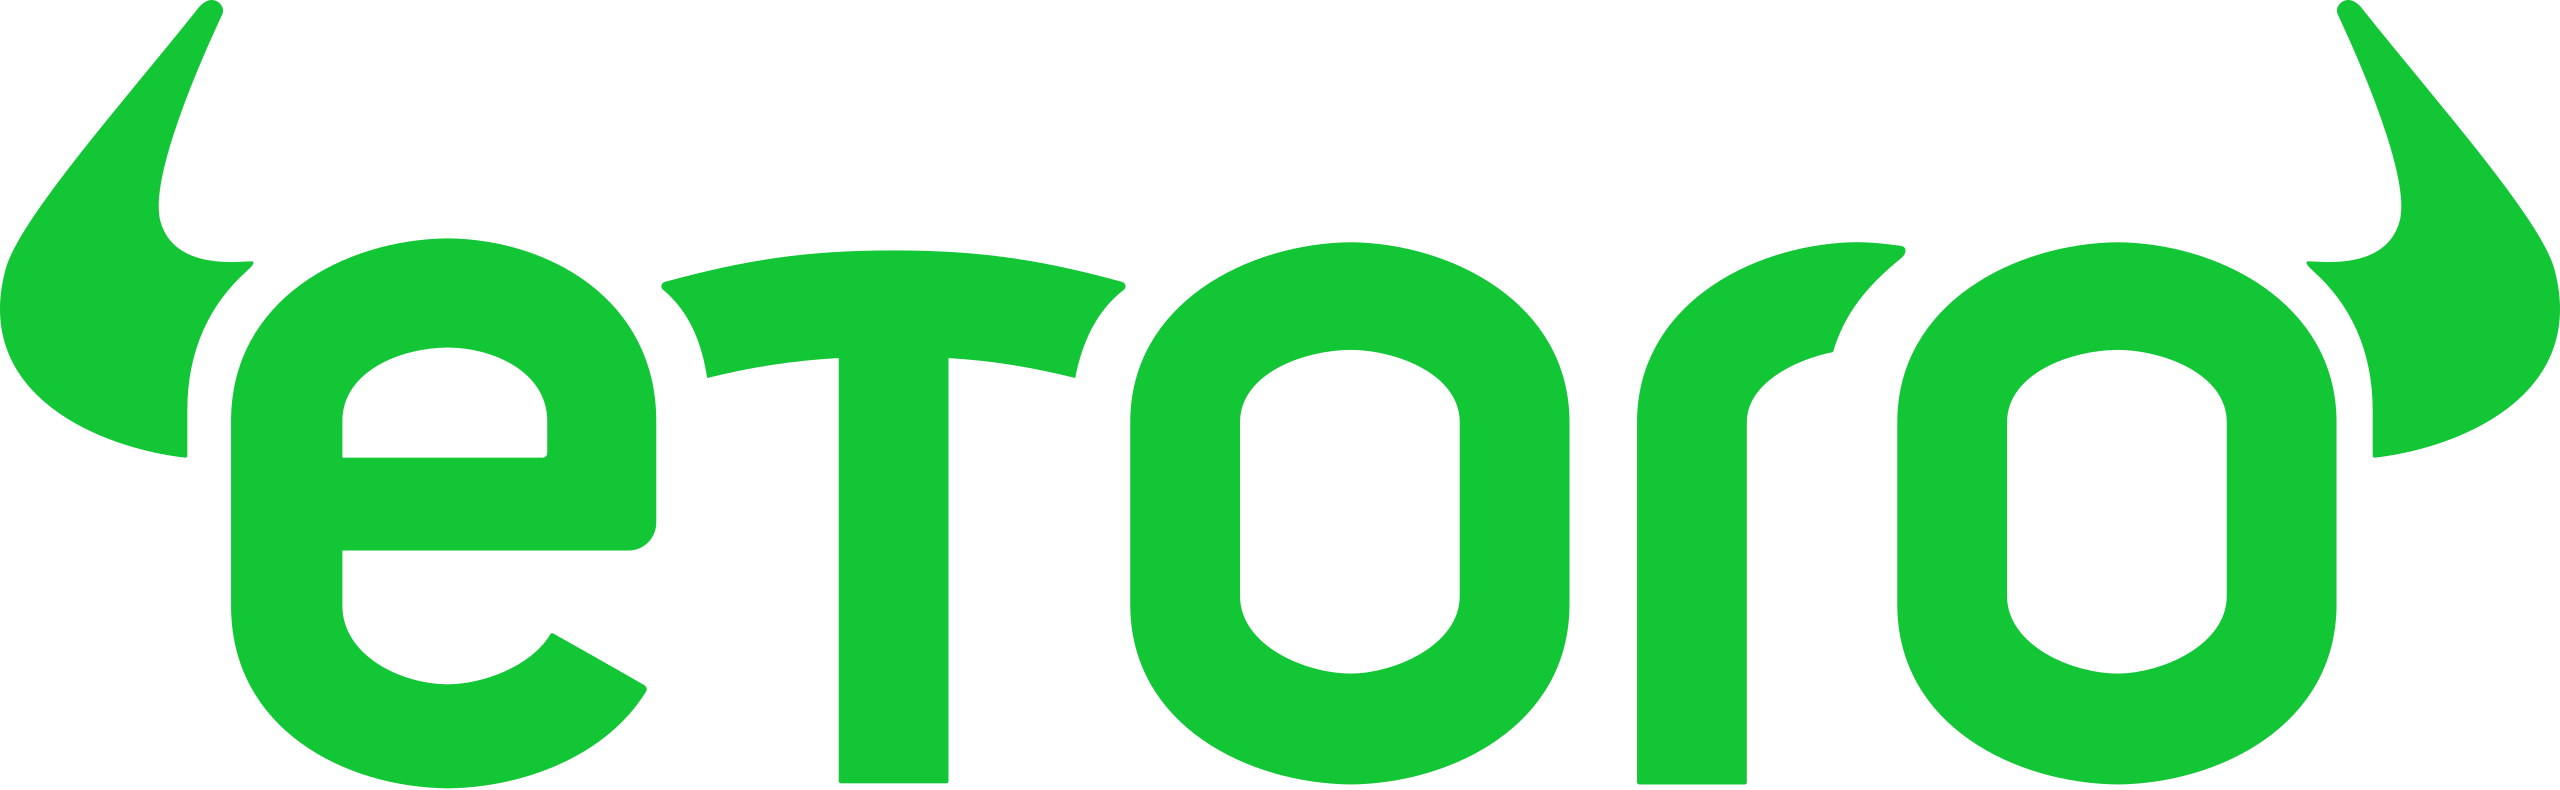 Etoro Logo - Beste Broker Sum.nl